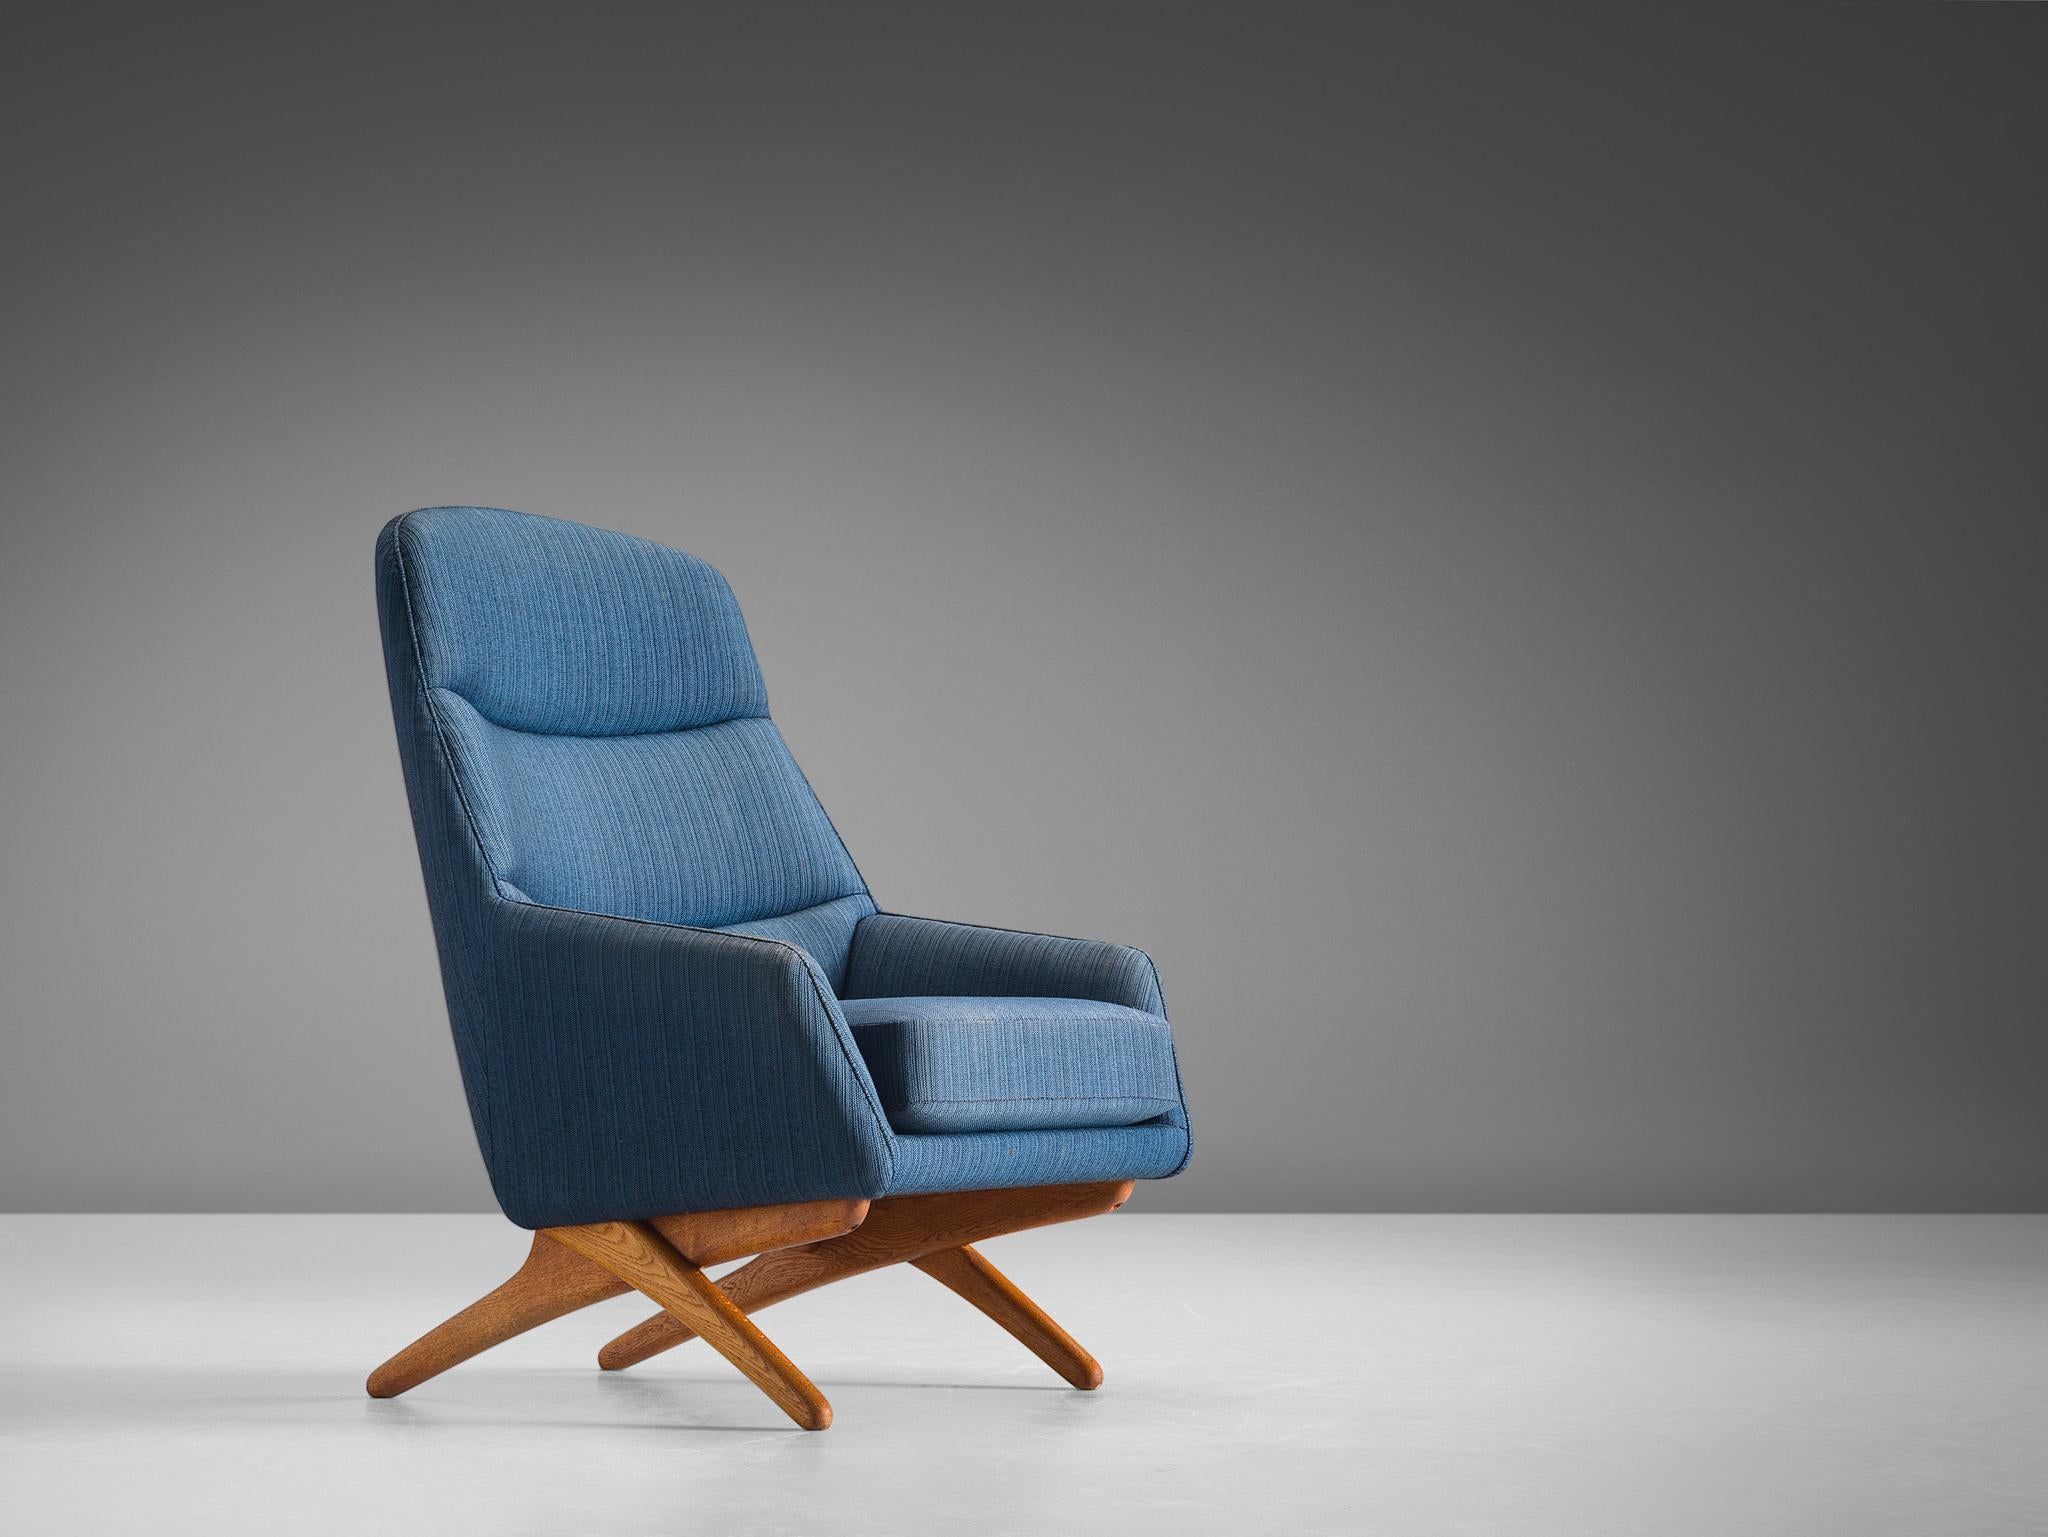 Illum Wikkelsø, chaise longue en tissu bleu et en chêne, Danemark, années 1960.

Cette chaise longue a été conçue par Illum Wikkelsø et fabriquée par Mikael Laursen au Danemark dans les années 1960. Cet ensemble de salon est confortable et présente